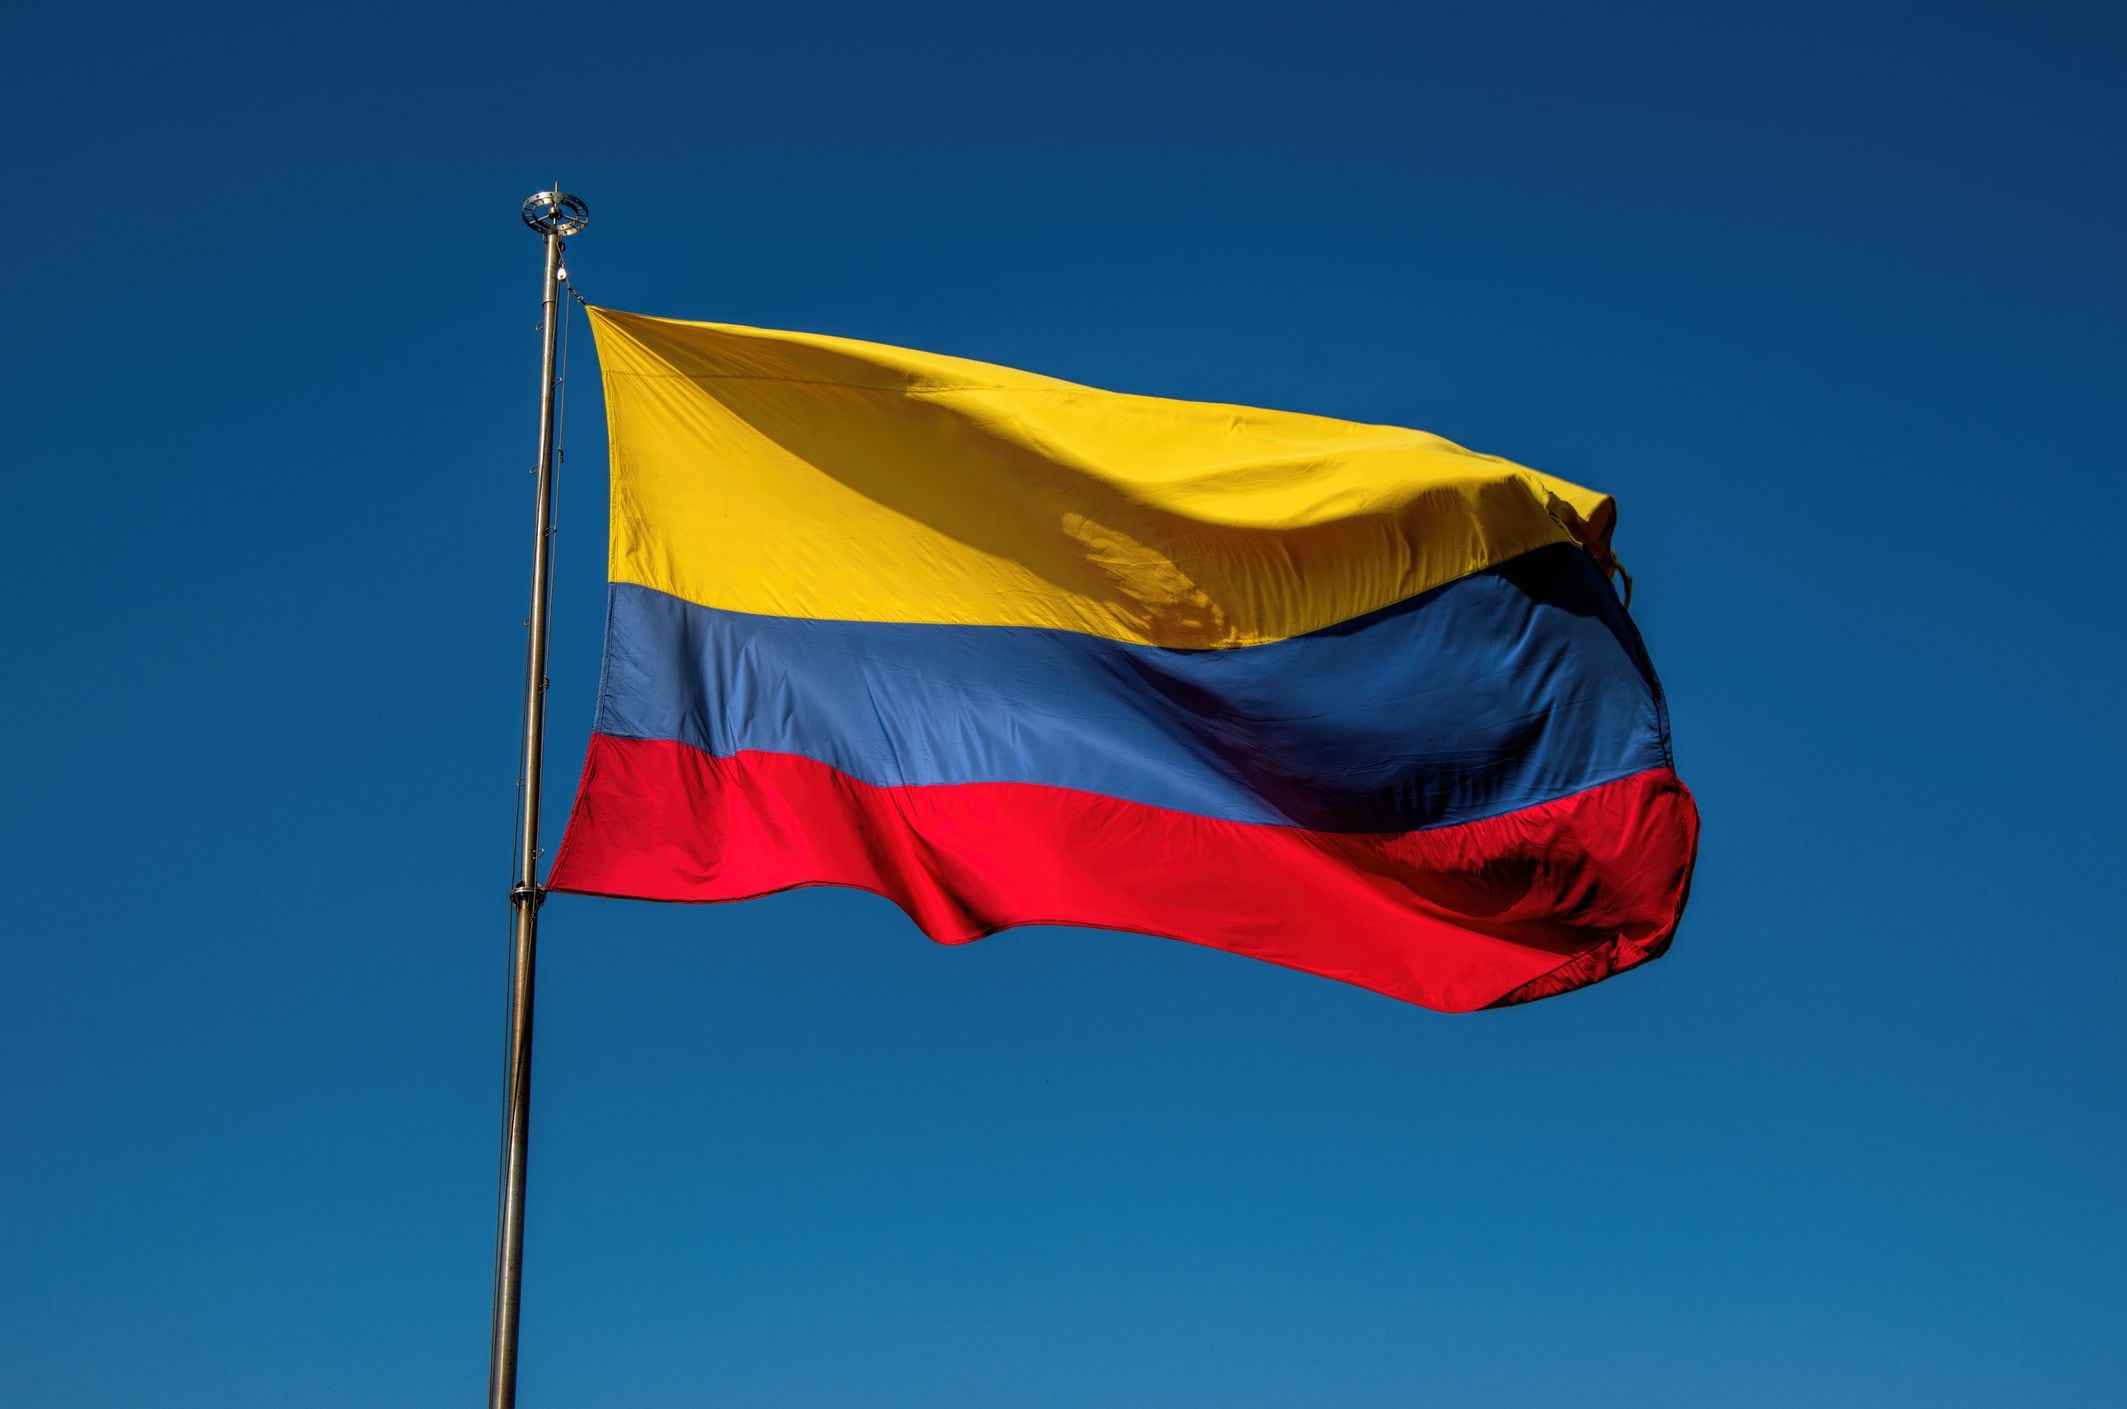 ¿Qué cambios deben hacerse en Colombia?